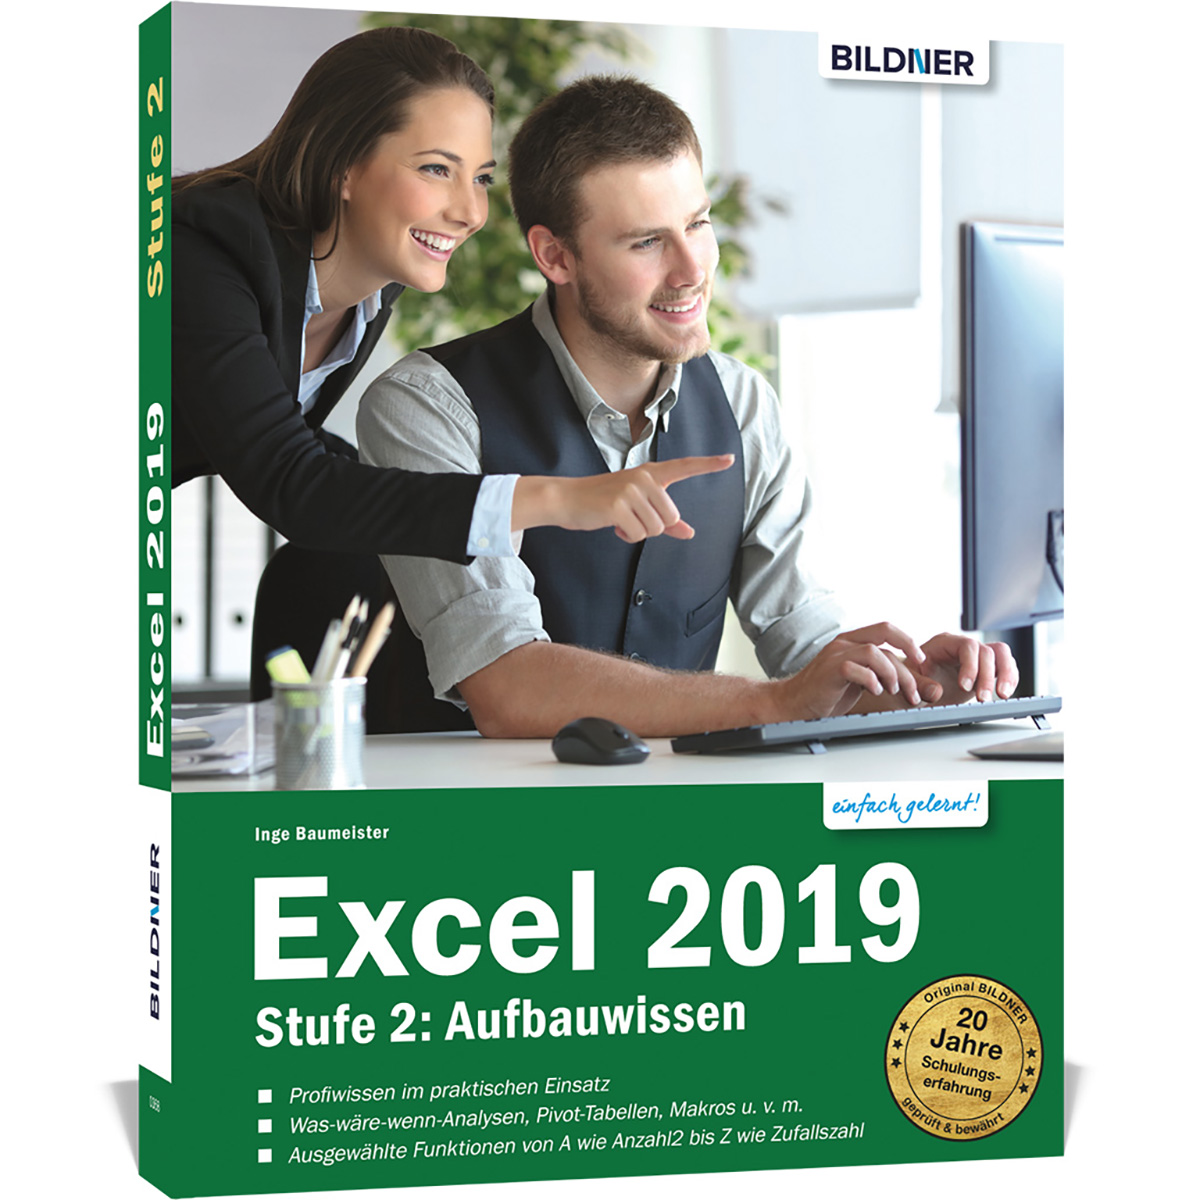 Excel 2019 - Aufbauwissen Stufe 2